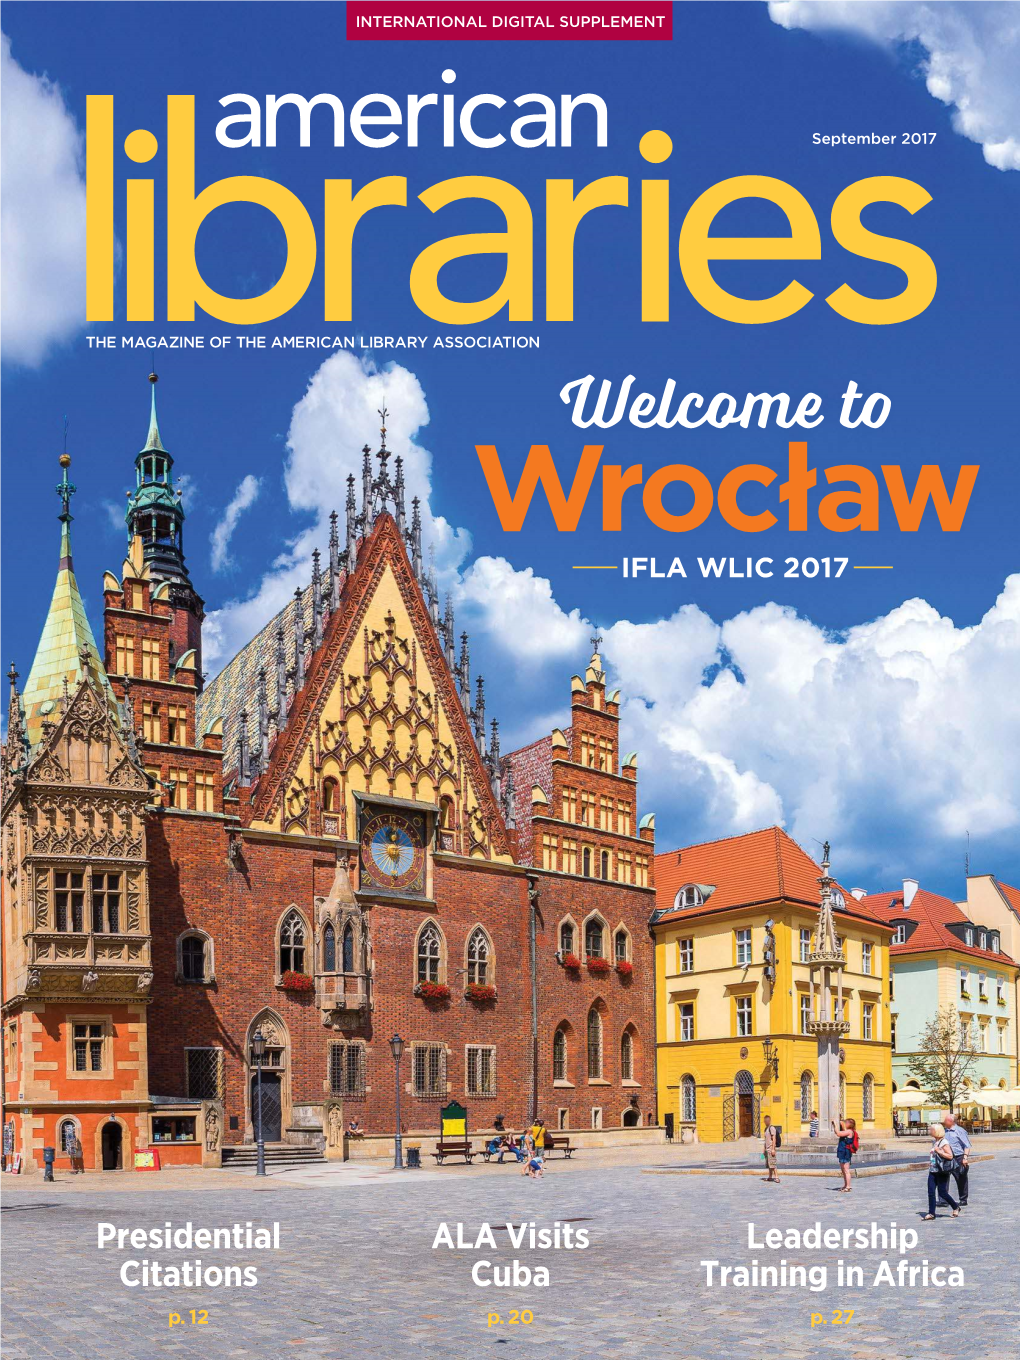 Wrocław IFLA WLIC 2017